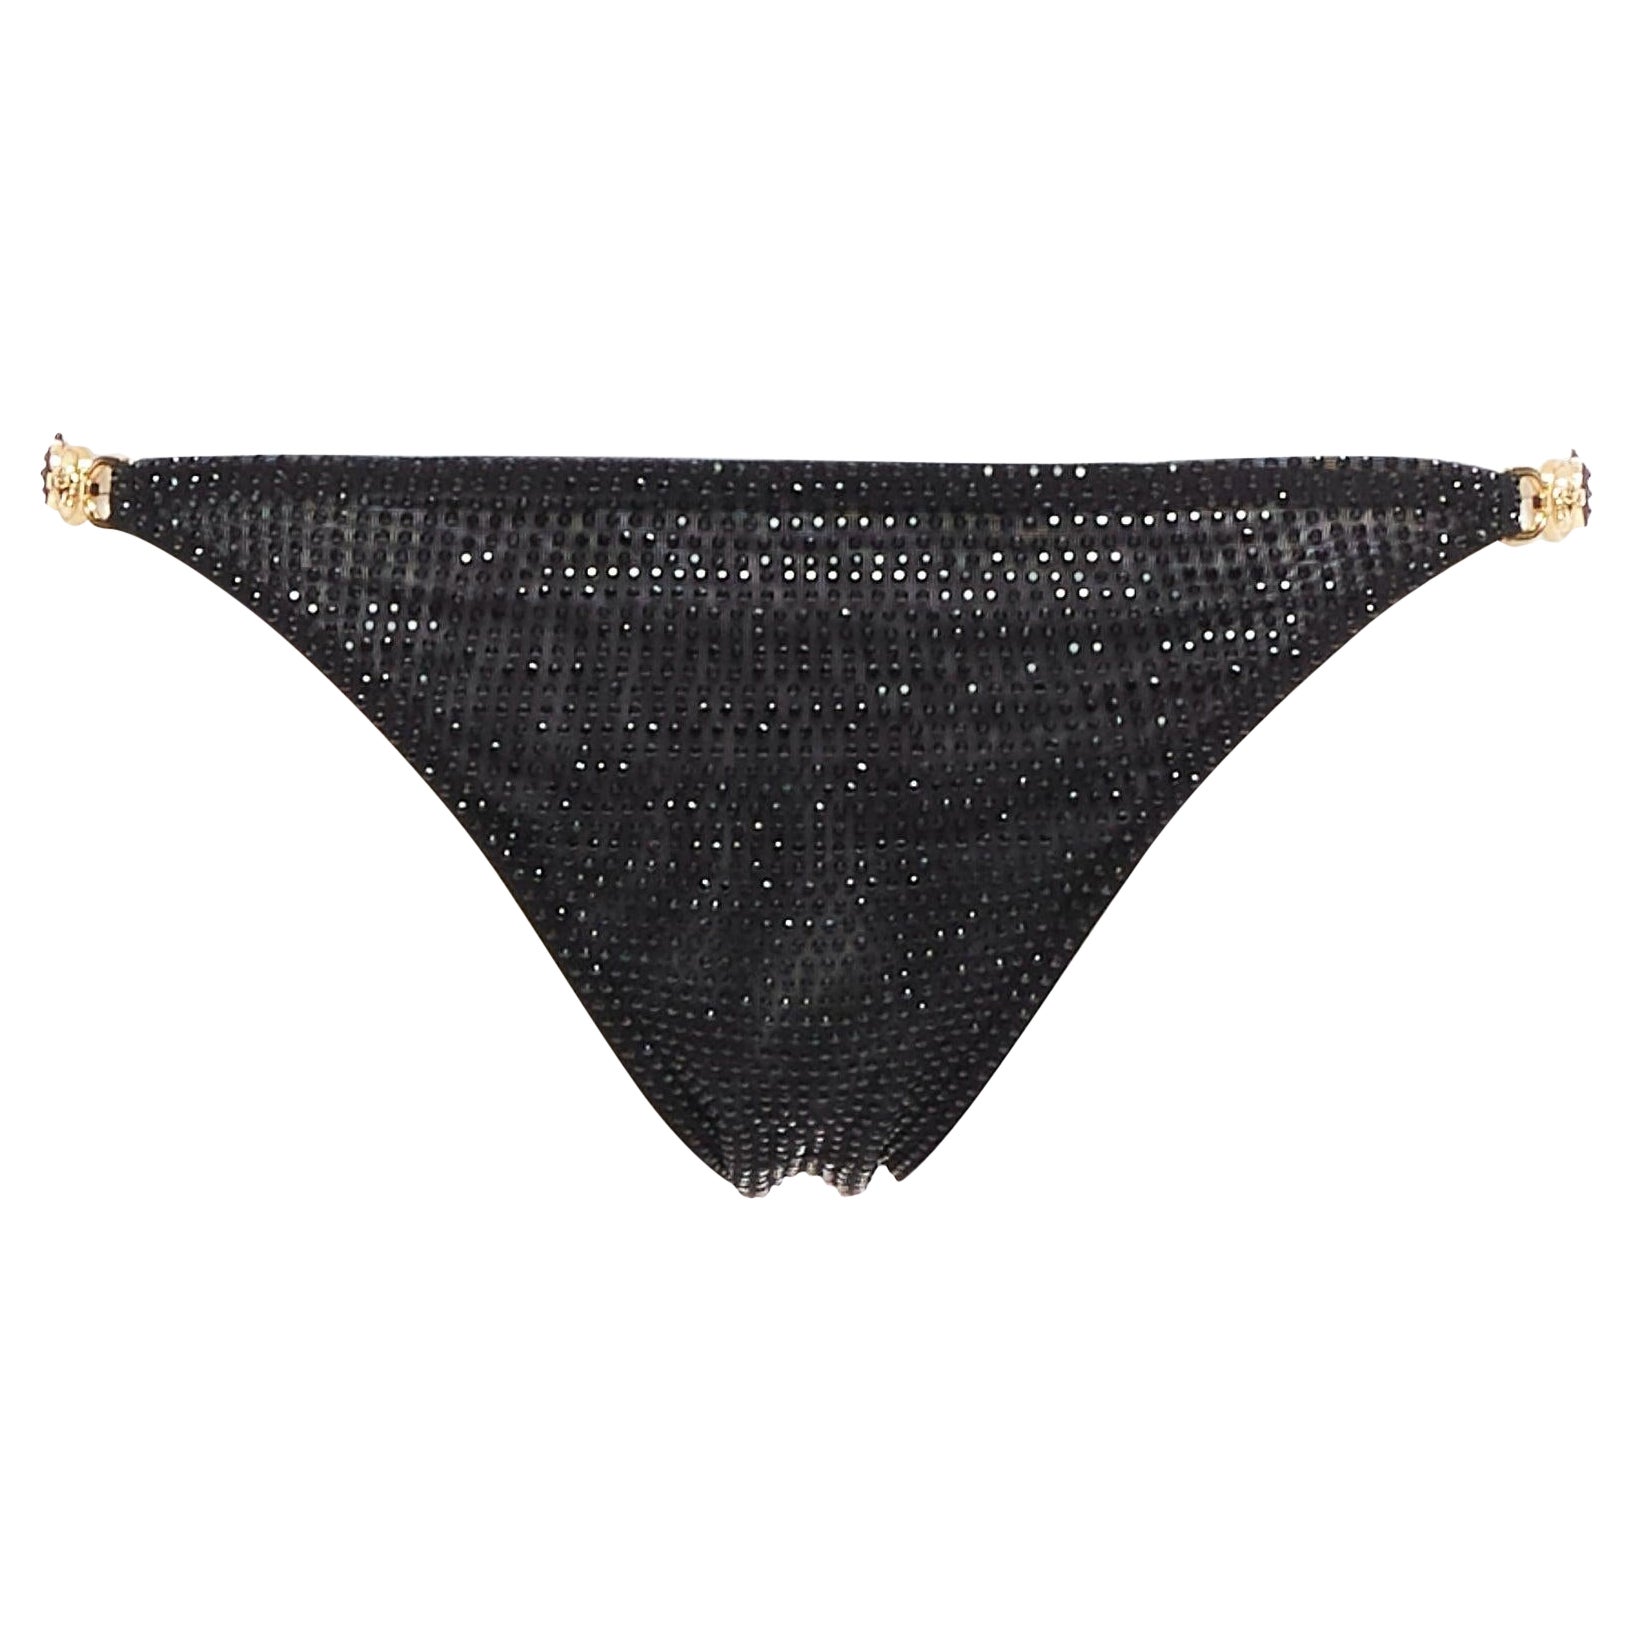 VERSACE 2019 black crystal embellished gold Medusa sheer bikini bottom Sz.1 S For Sale